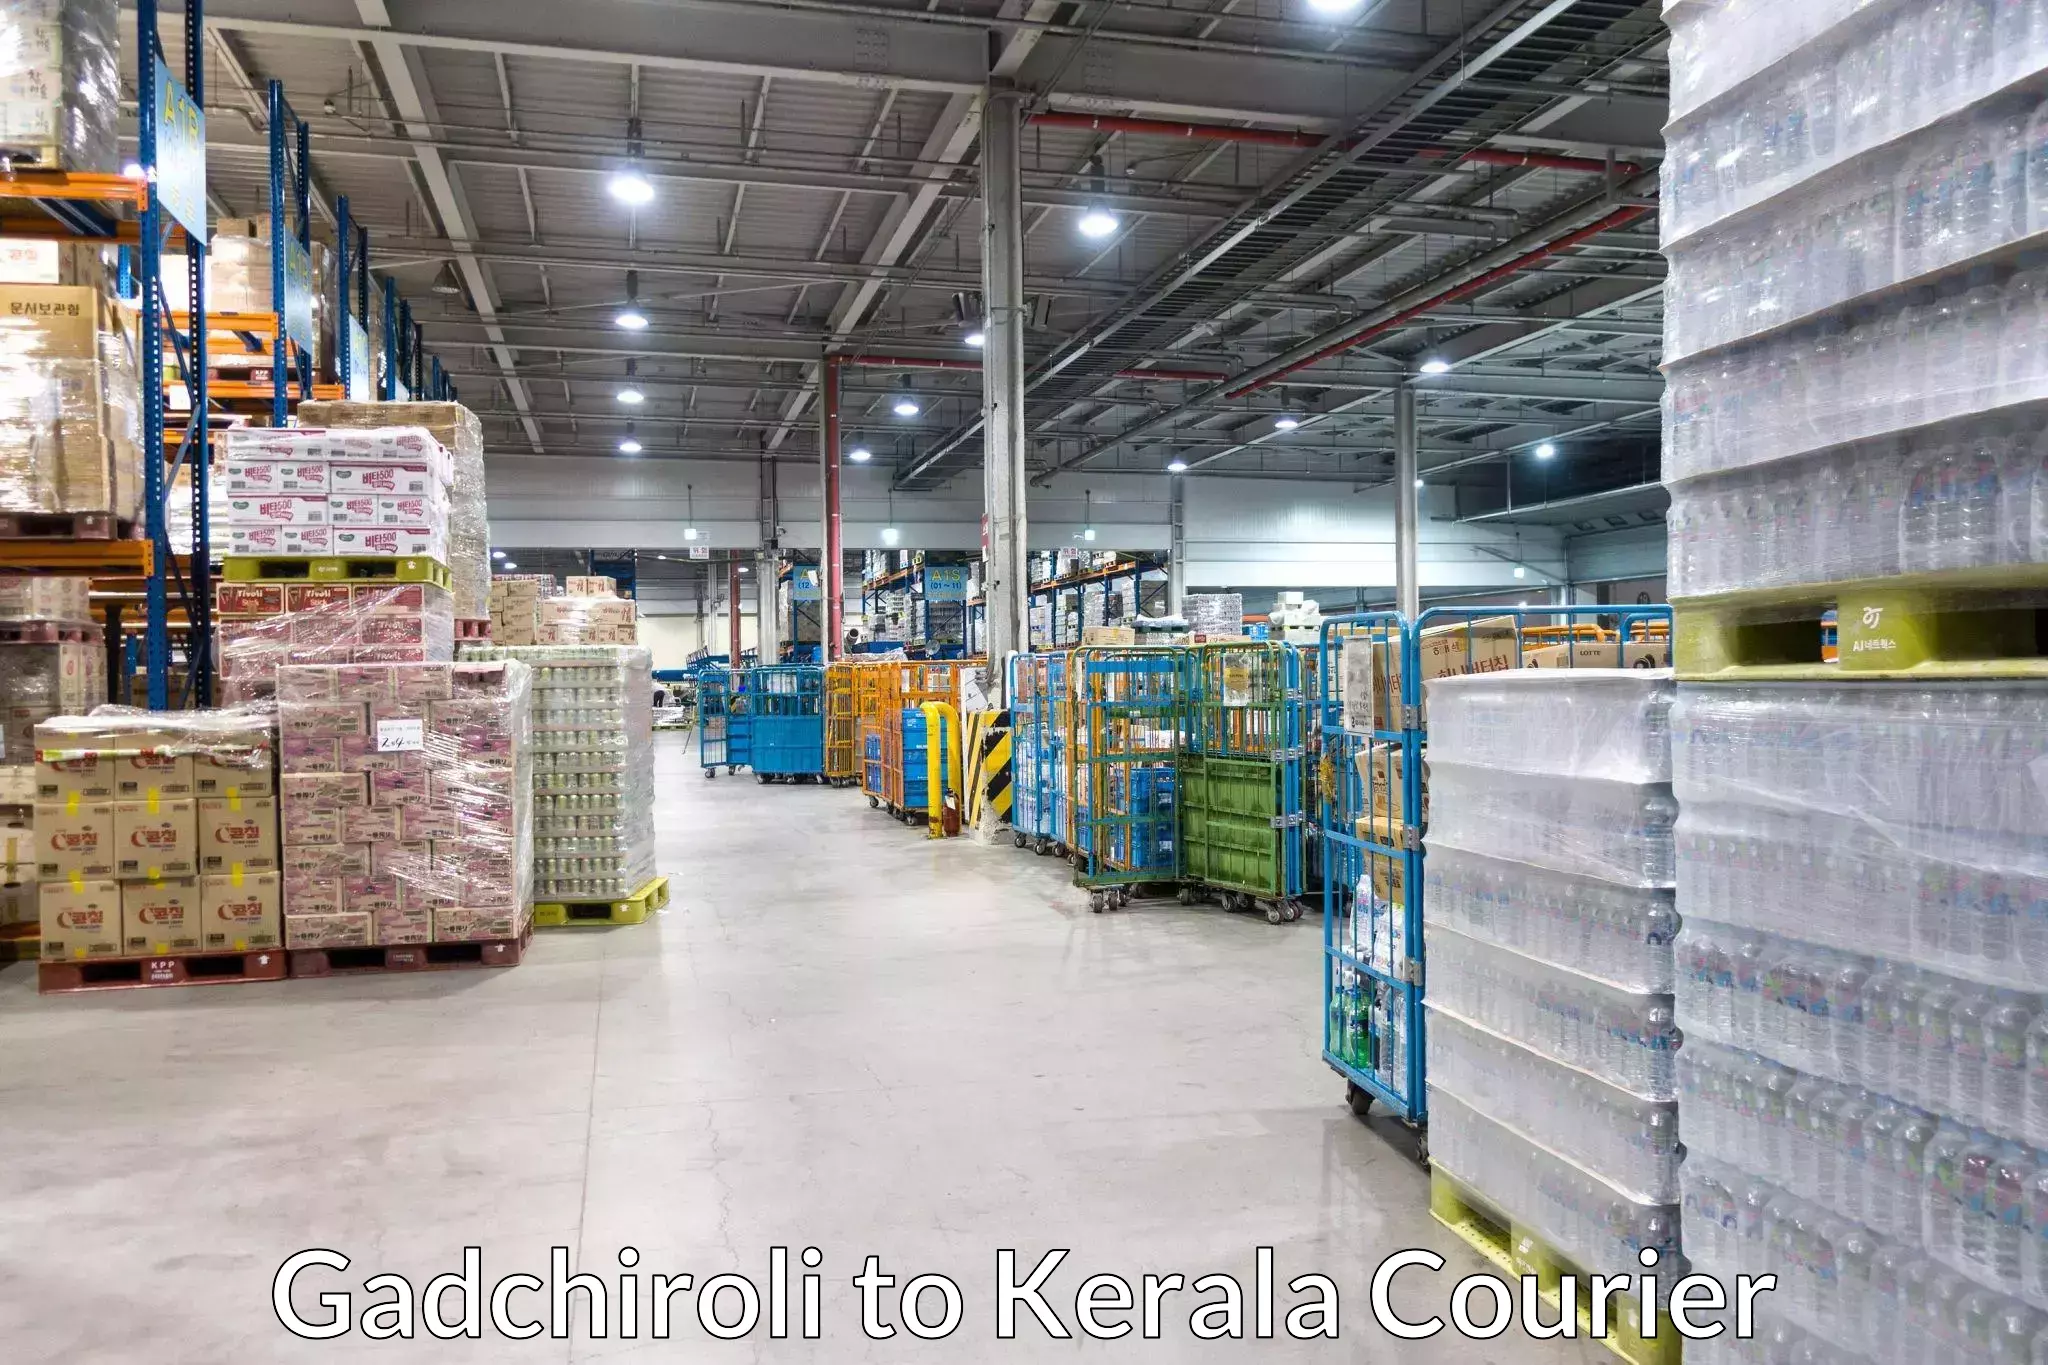 Smart shipping technology Gadchiroli to Cochin Port Kochi